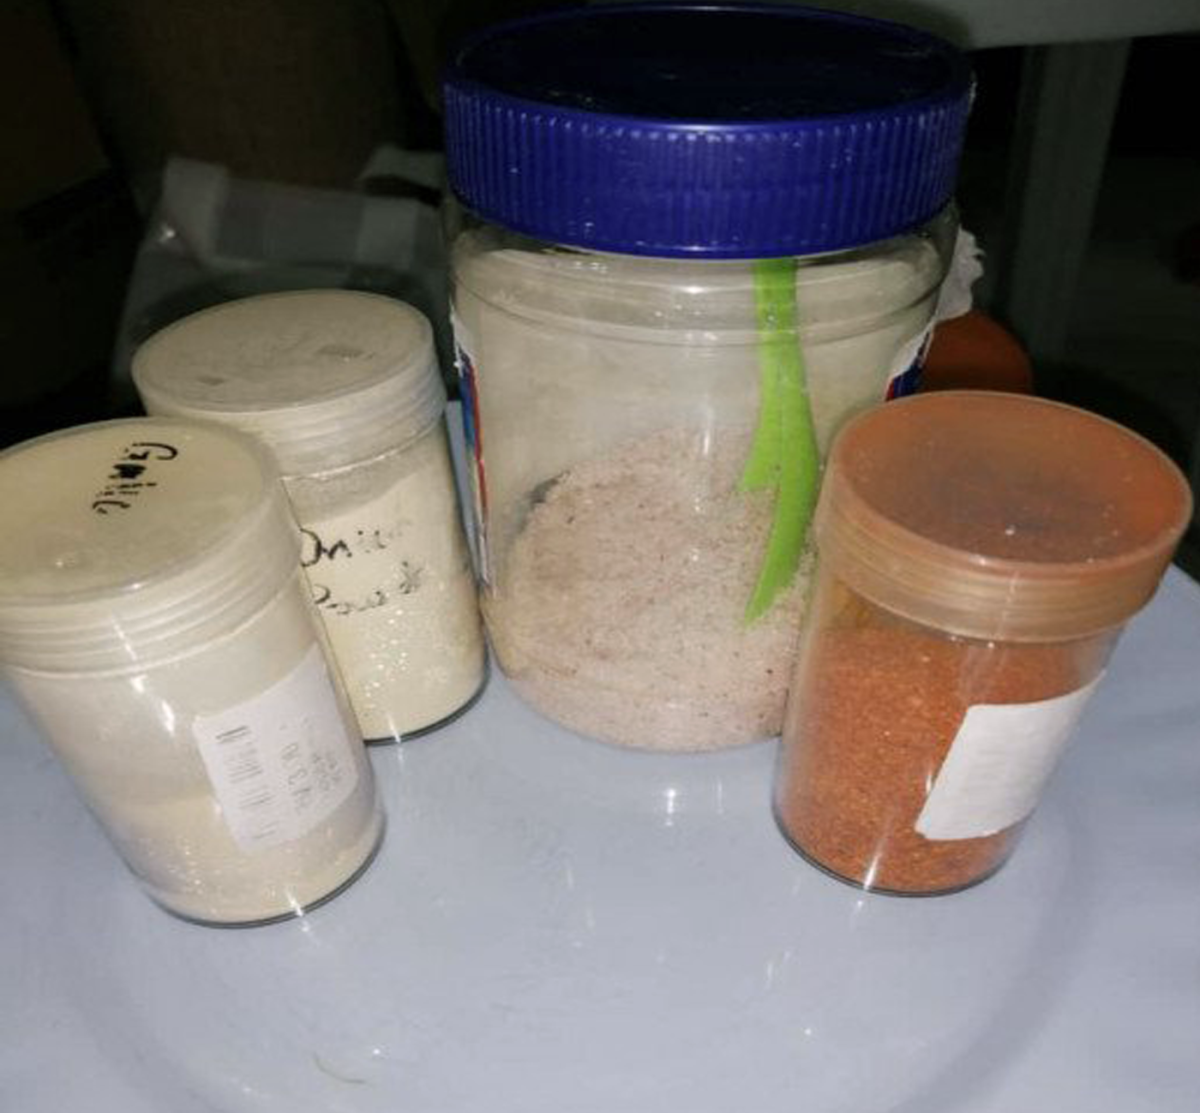 (L -R) Garlic powder, Onion powder, Himalayan Pink Salt, and Chili powder